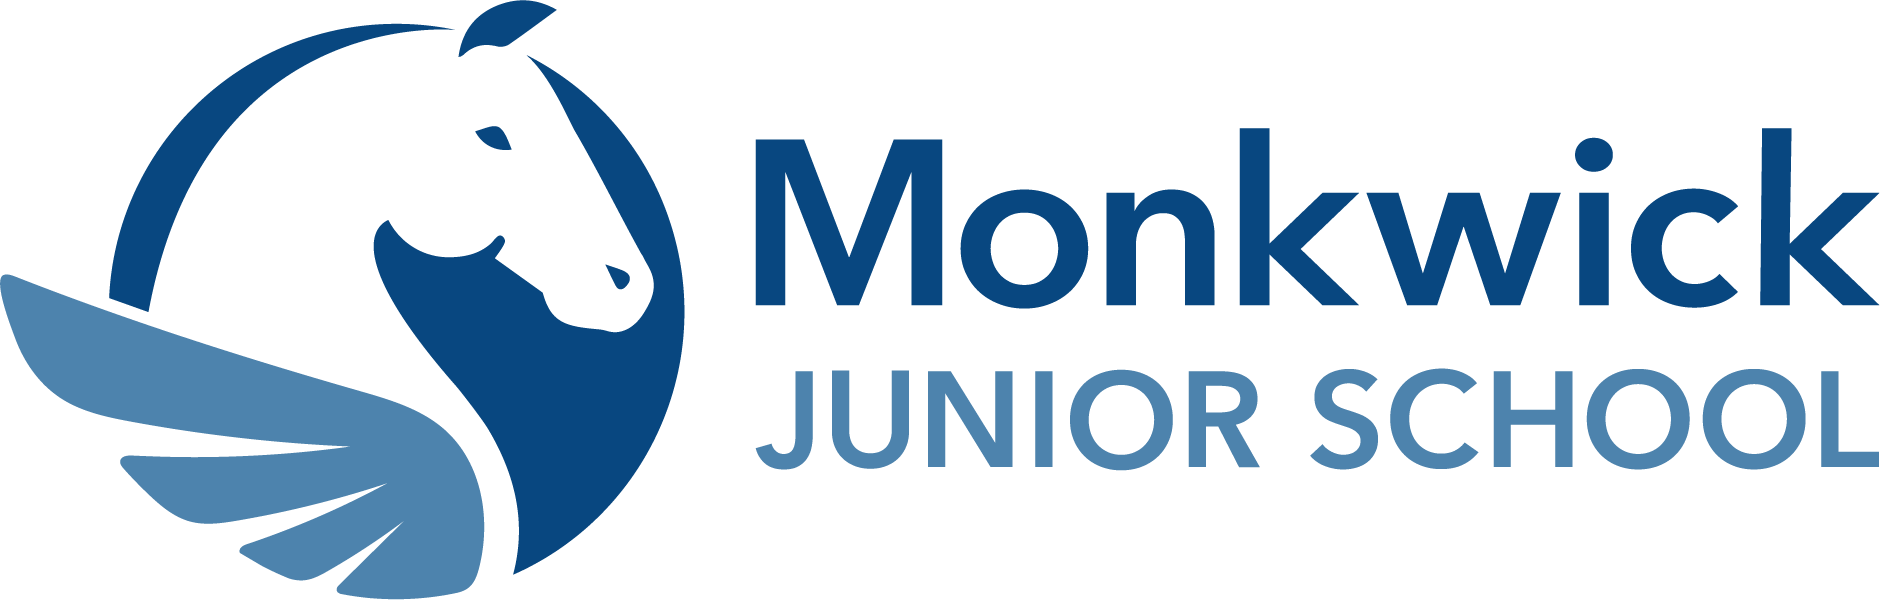 Monkwick Junior School